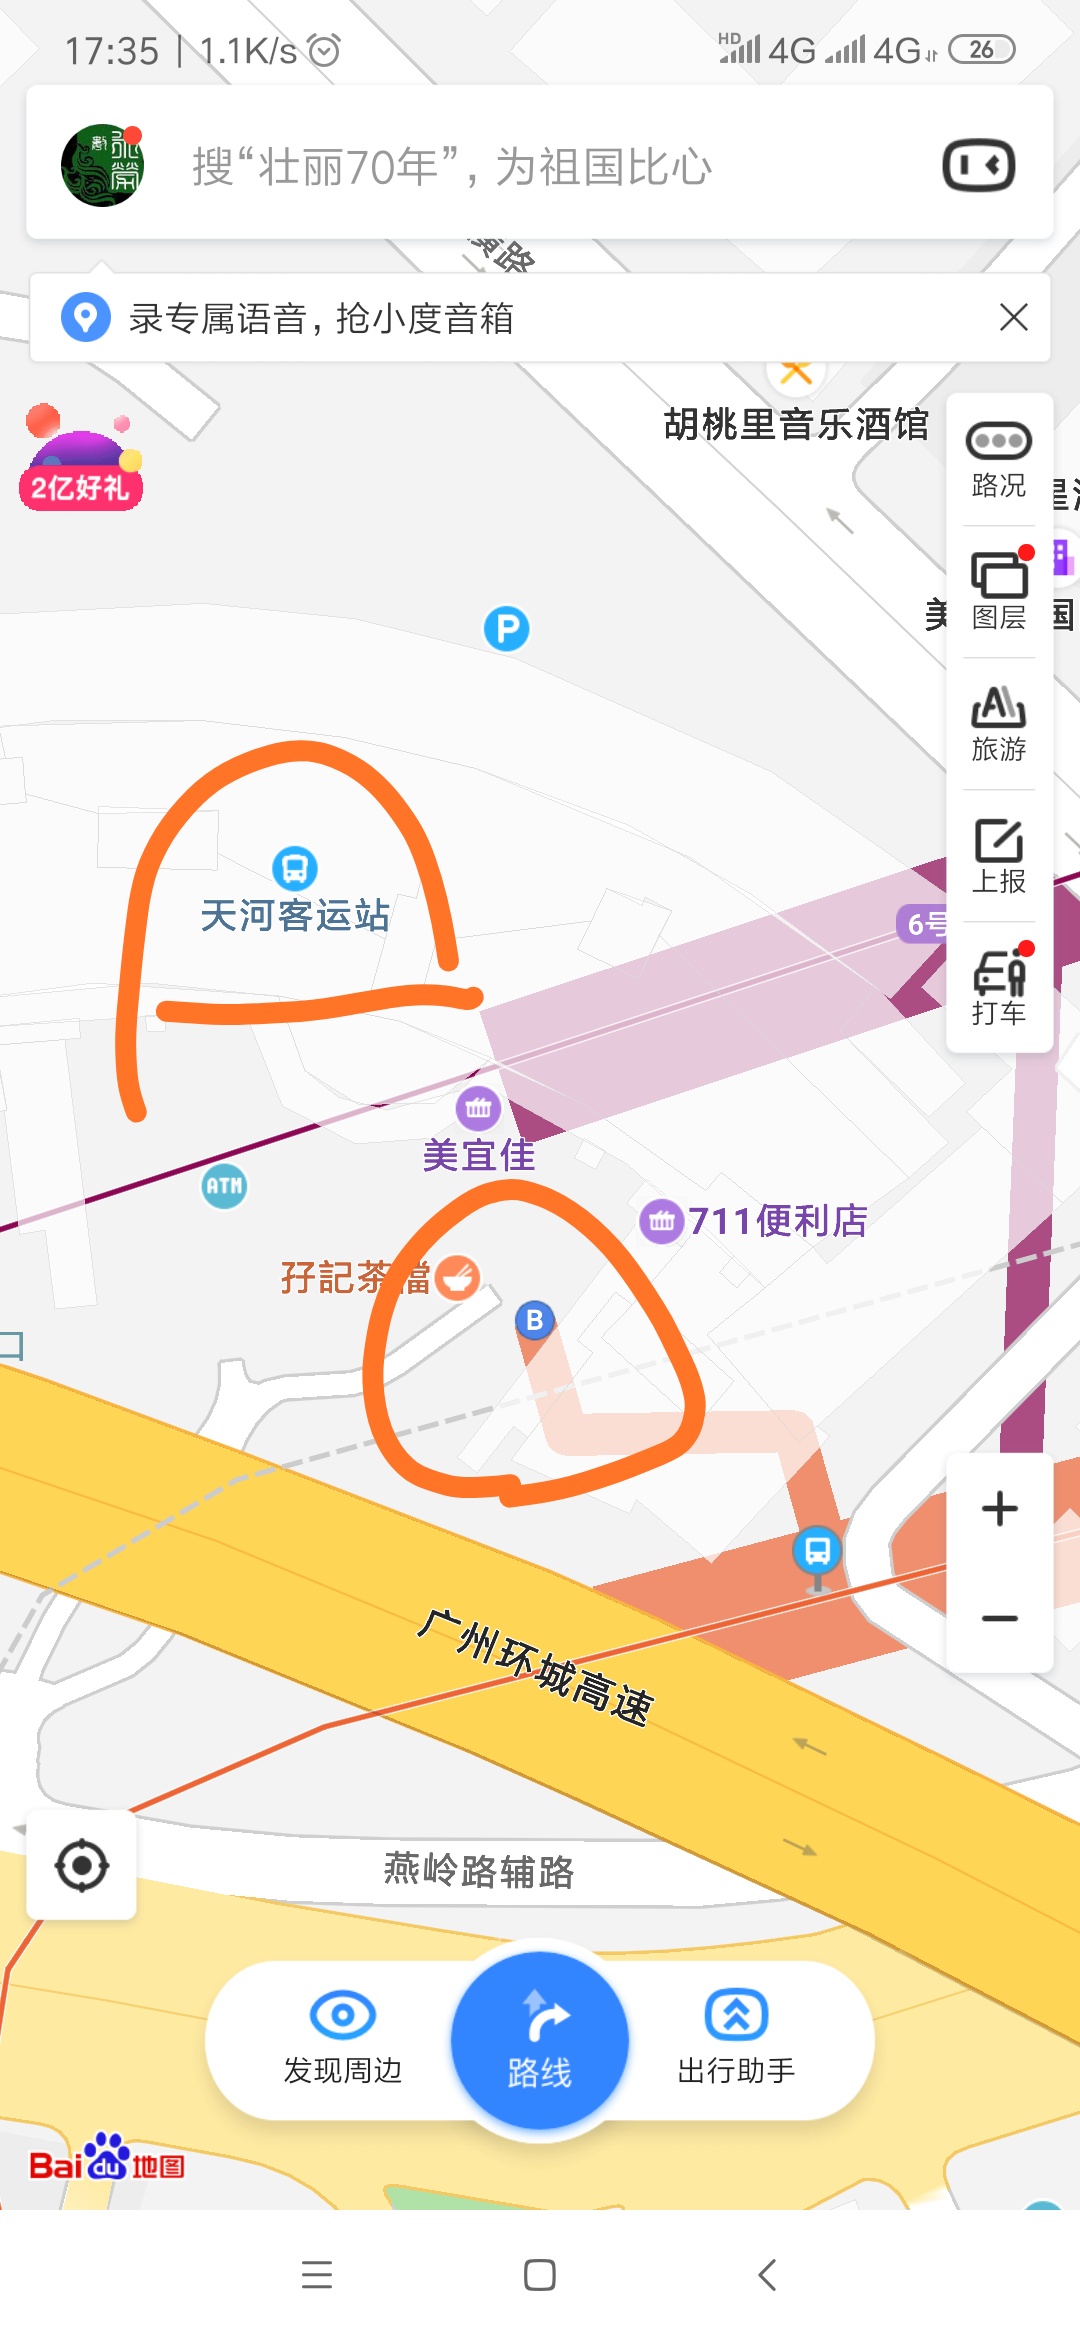 在天河客运站要到广州时尚天河商业广场乘坐地铁几号线在哪个站下车哪个出口（天河客运地铁站出口）